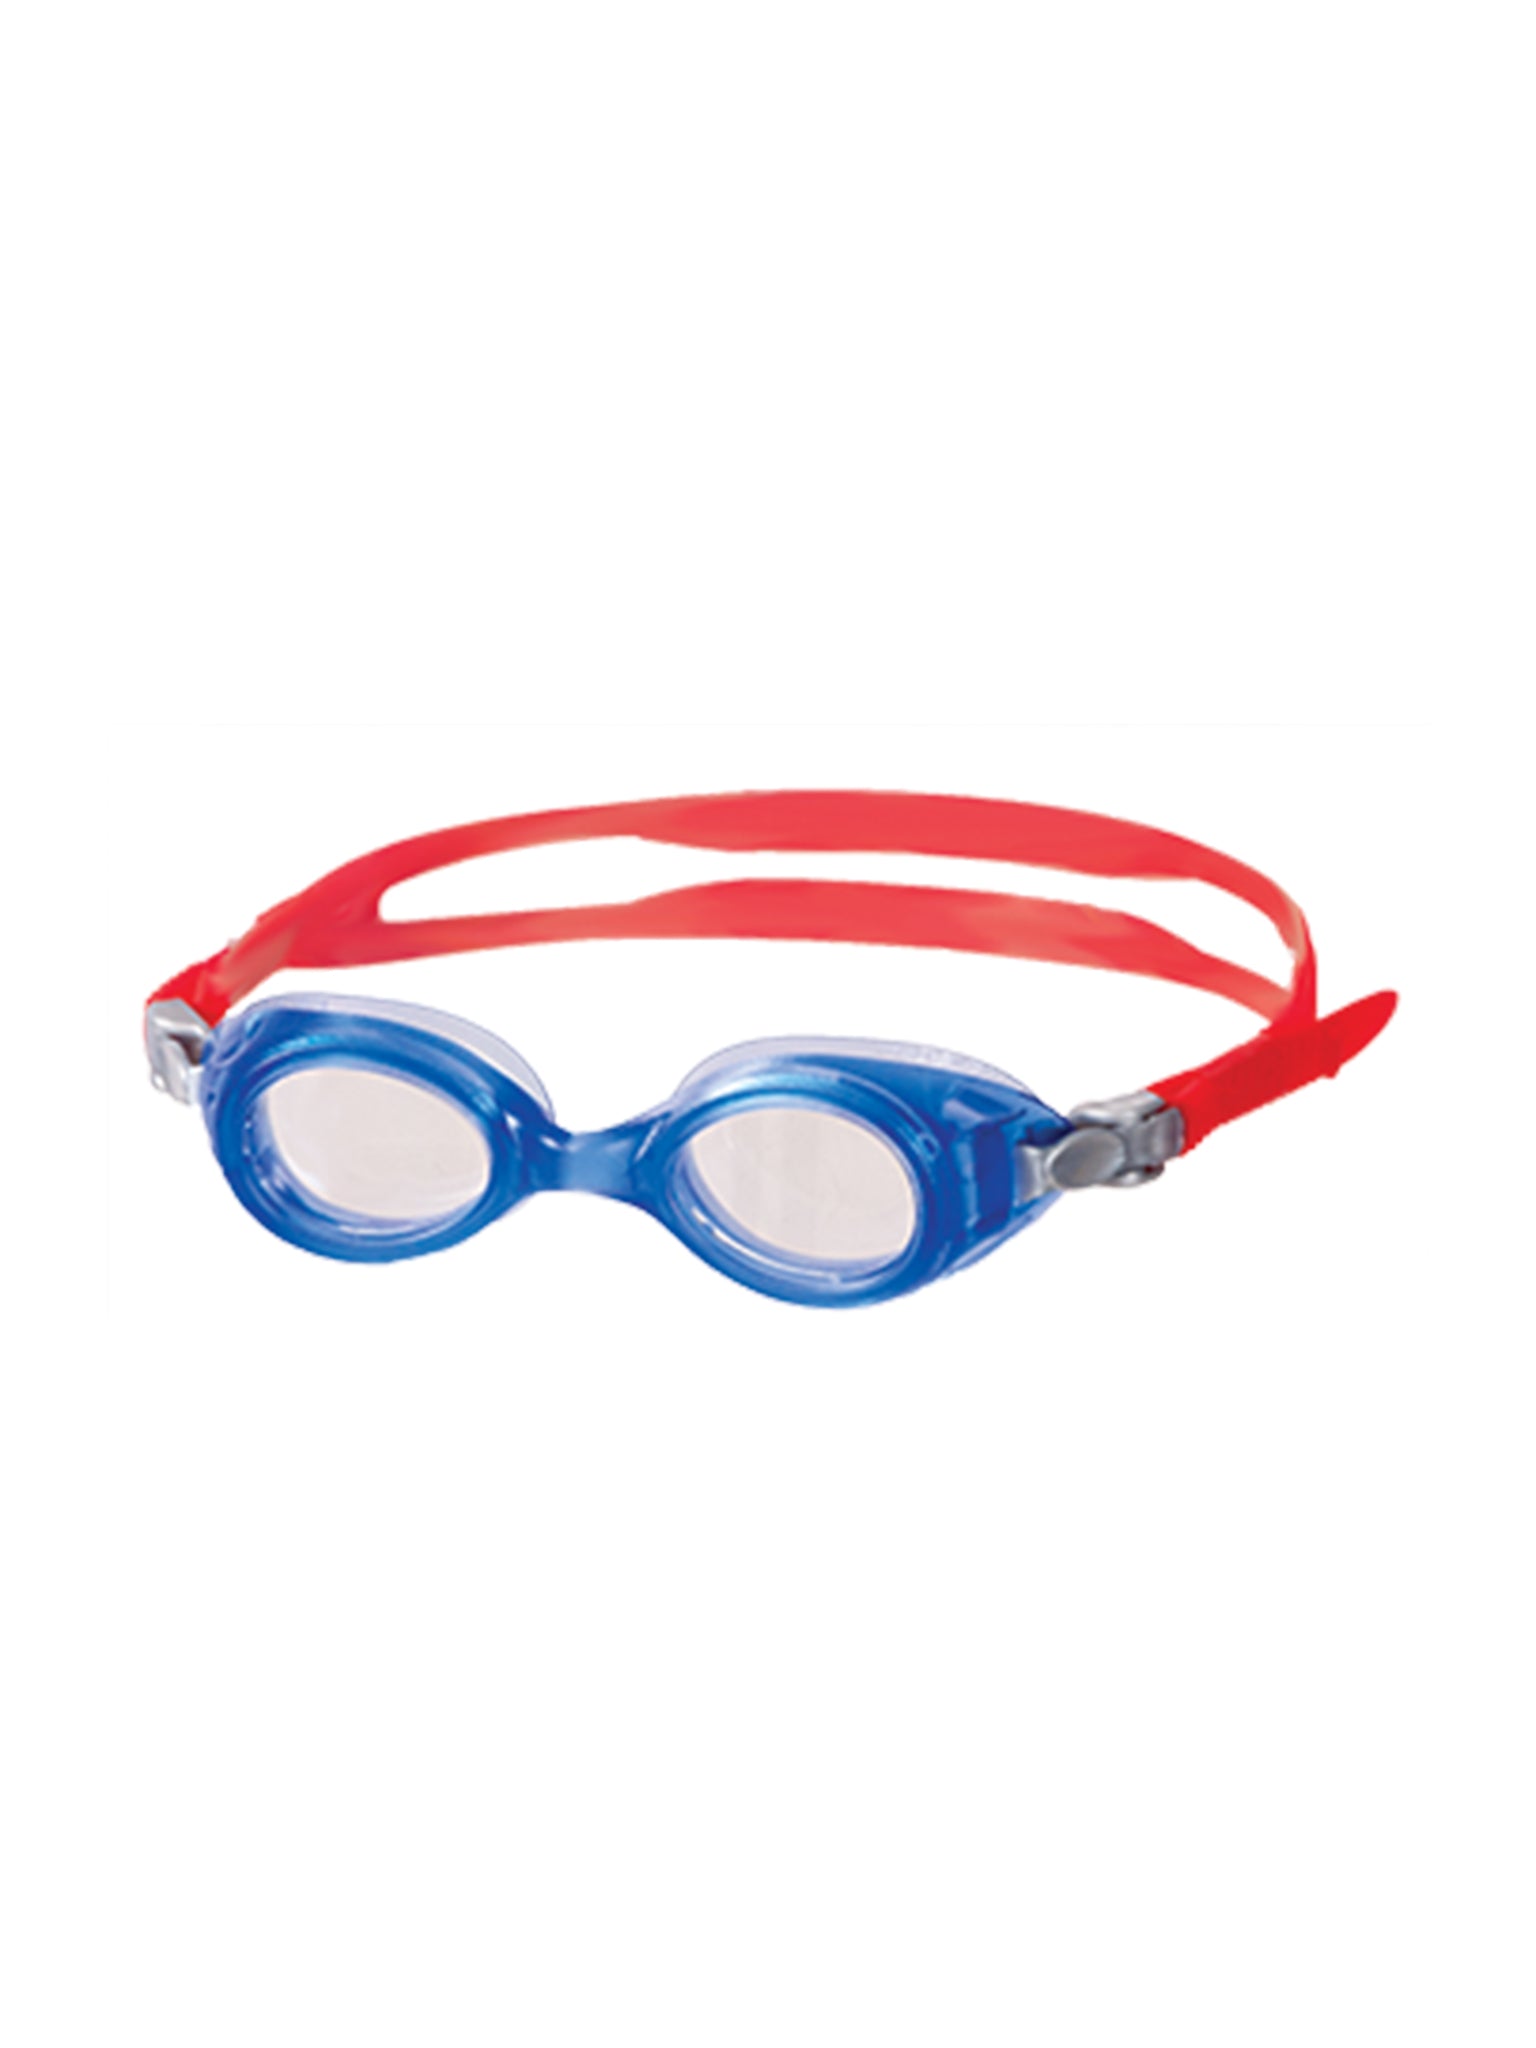 Lunettes de natation Hero Junior - Bleu/Rouge